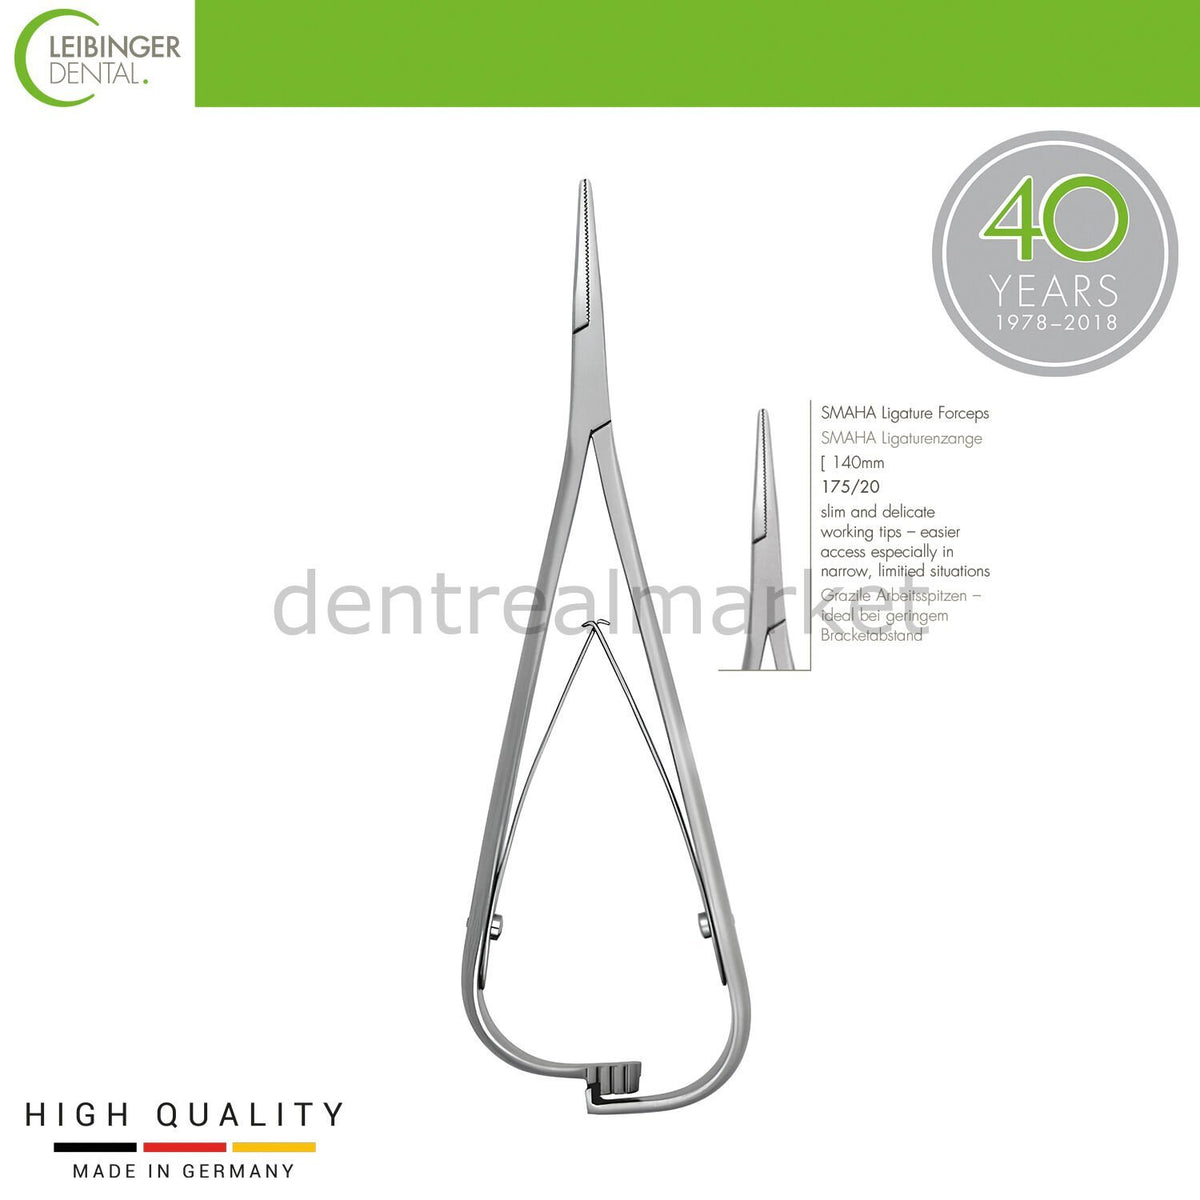 DentrealStore - Leibinger Orthodontic Smaha Ligature Forceps - Orthodontic Forceps - 140 mm